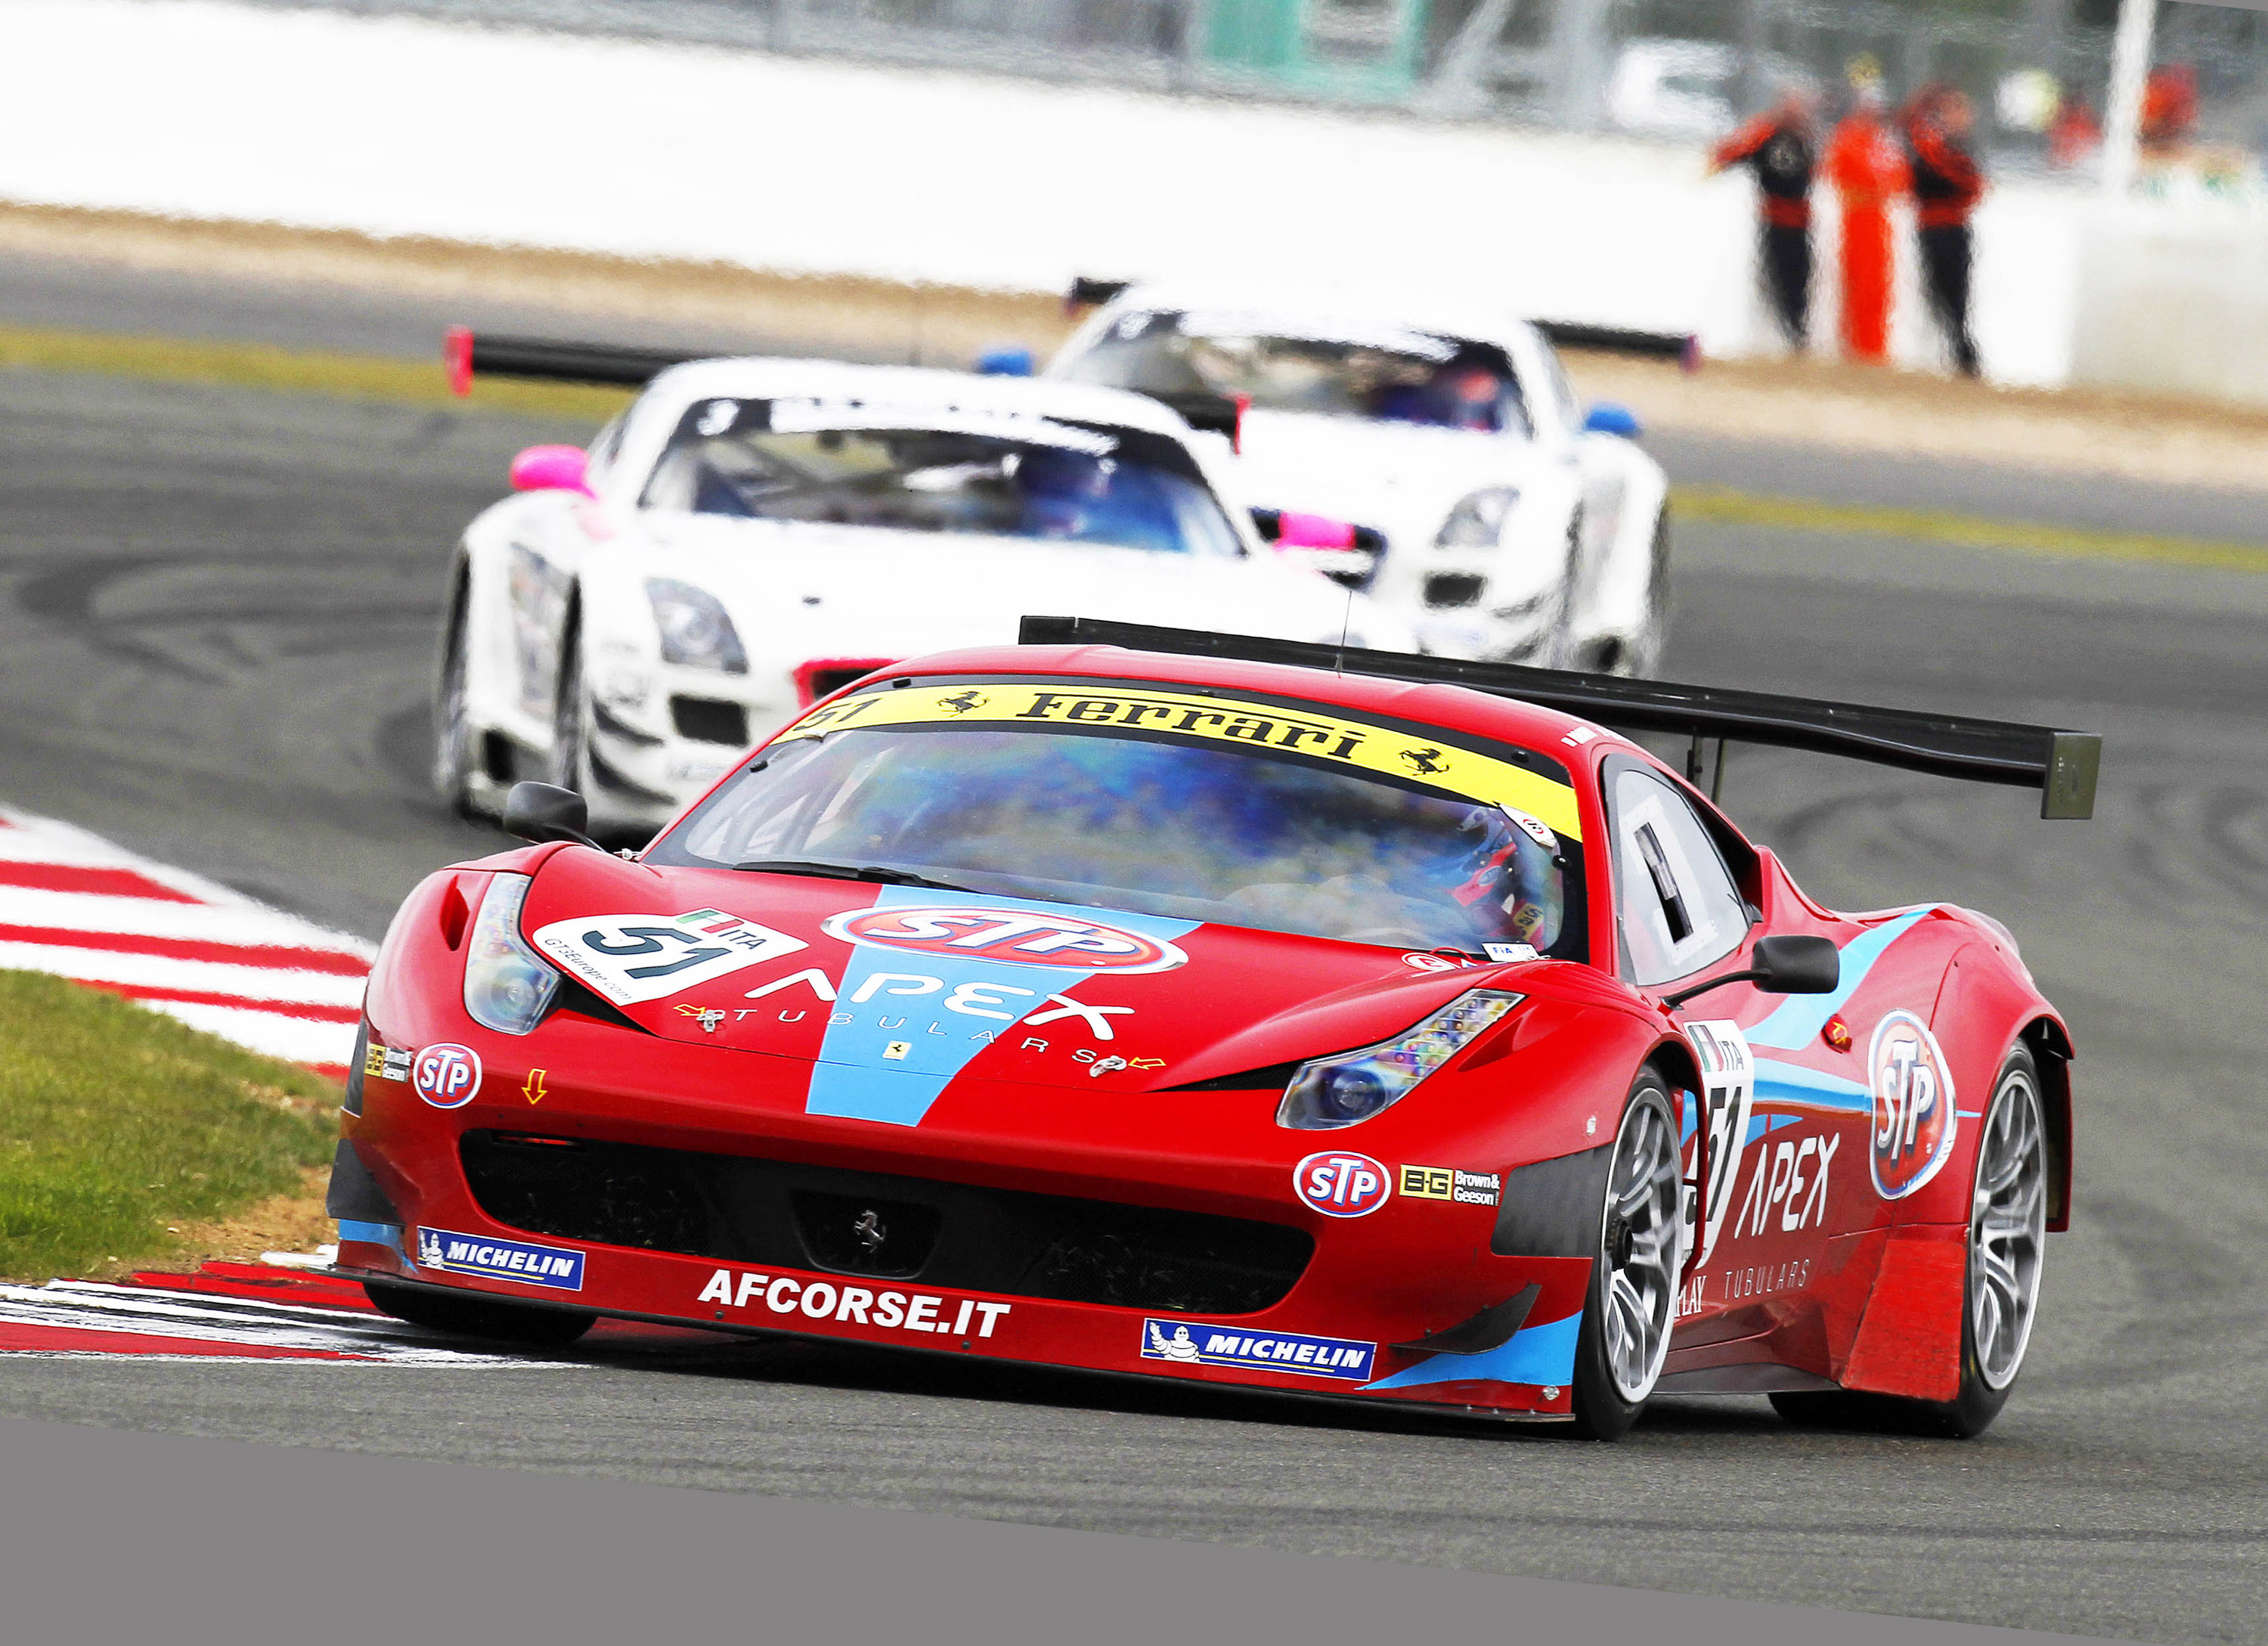 2011, Af corse, Stp, Ferrari, F458, Supercars, Supercar, Race, Racing Wallpaper